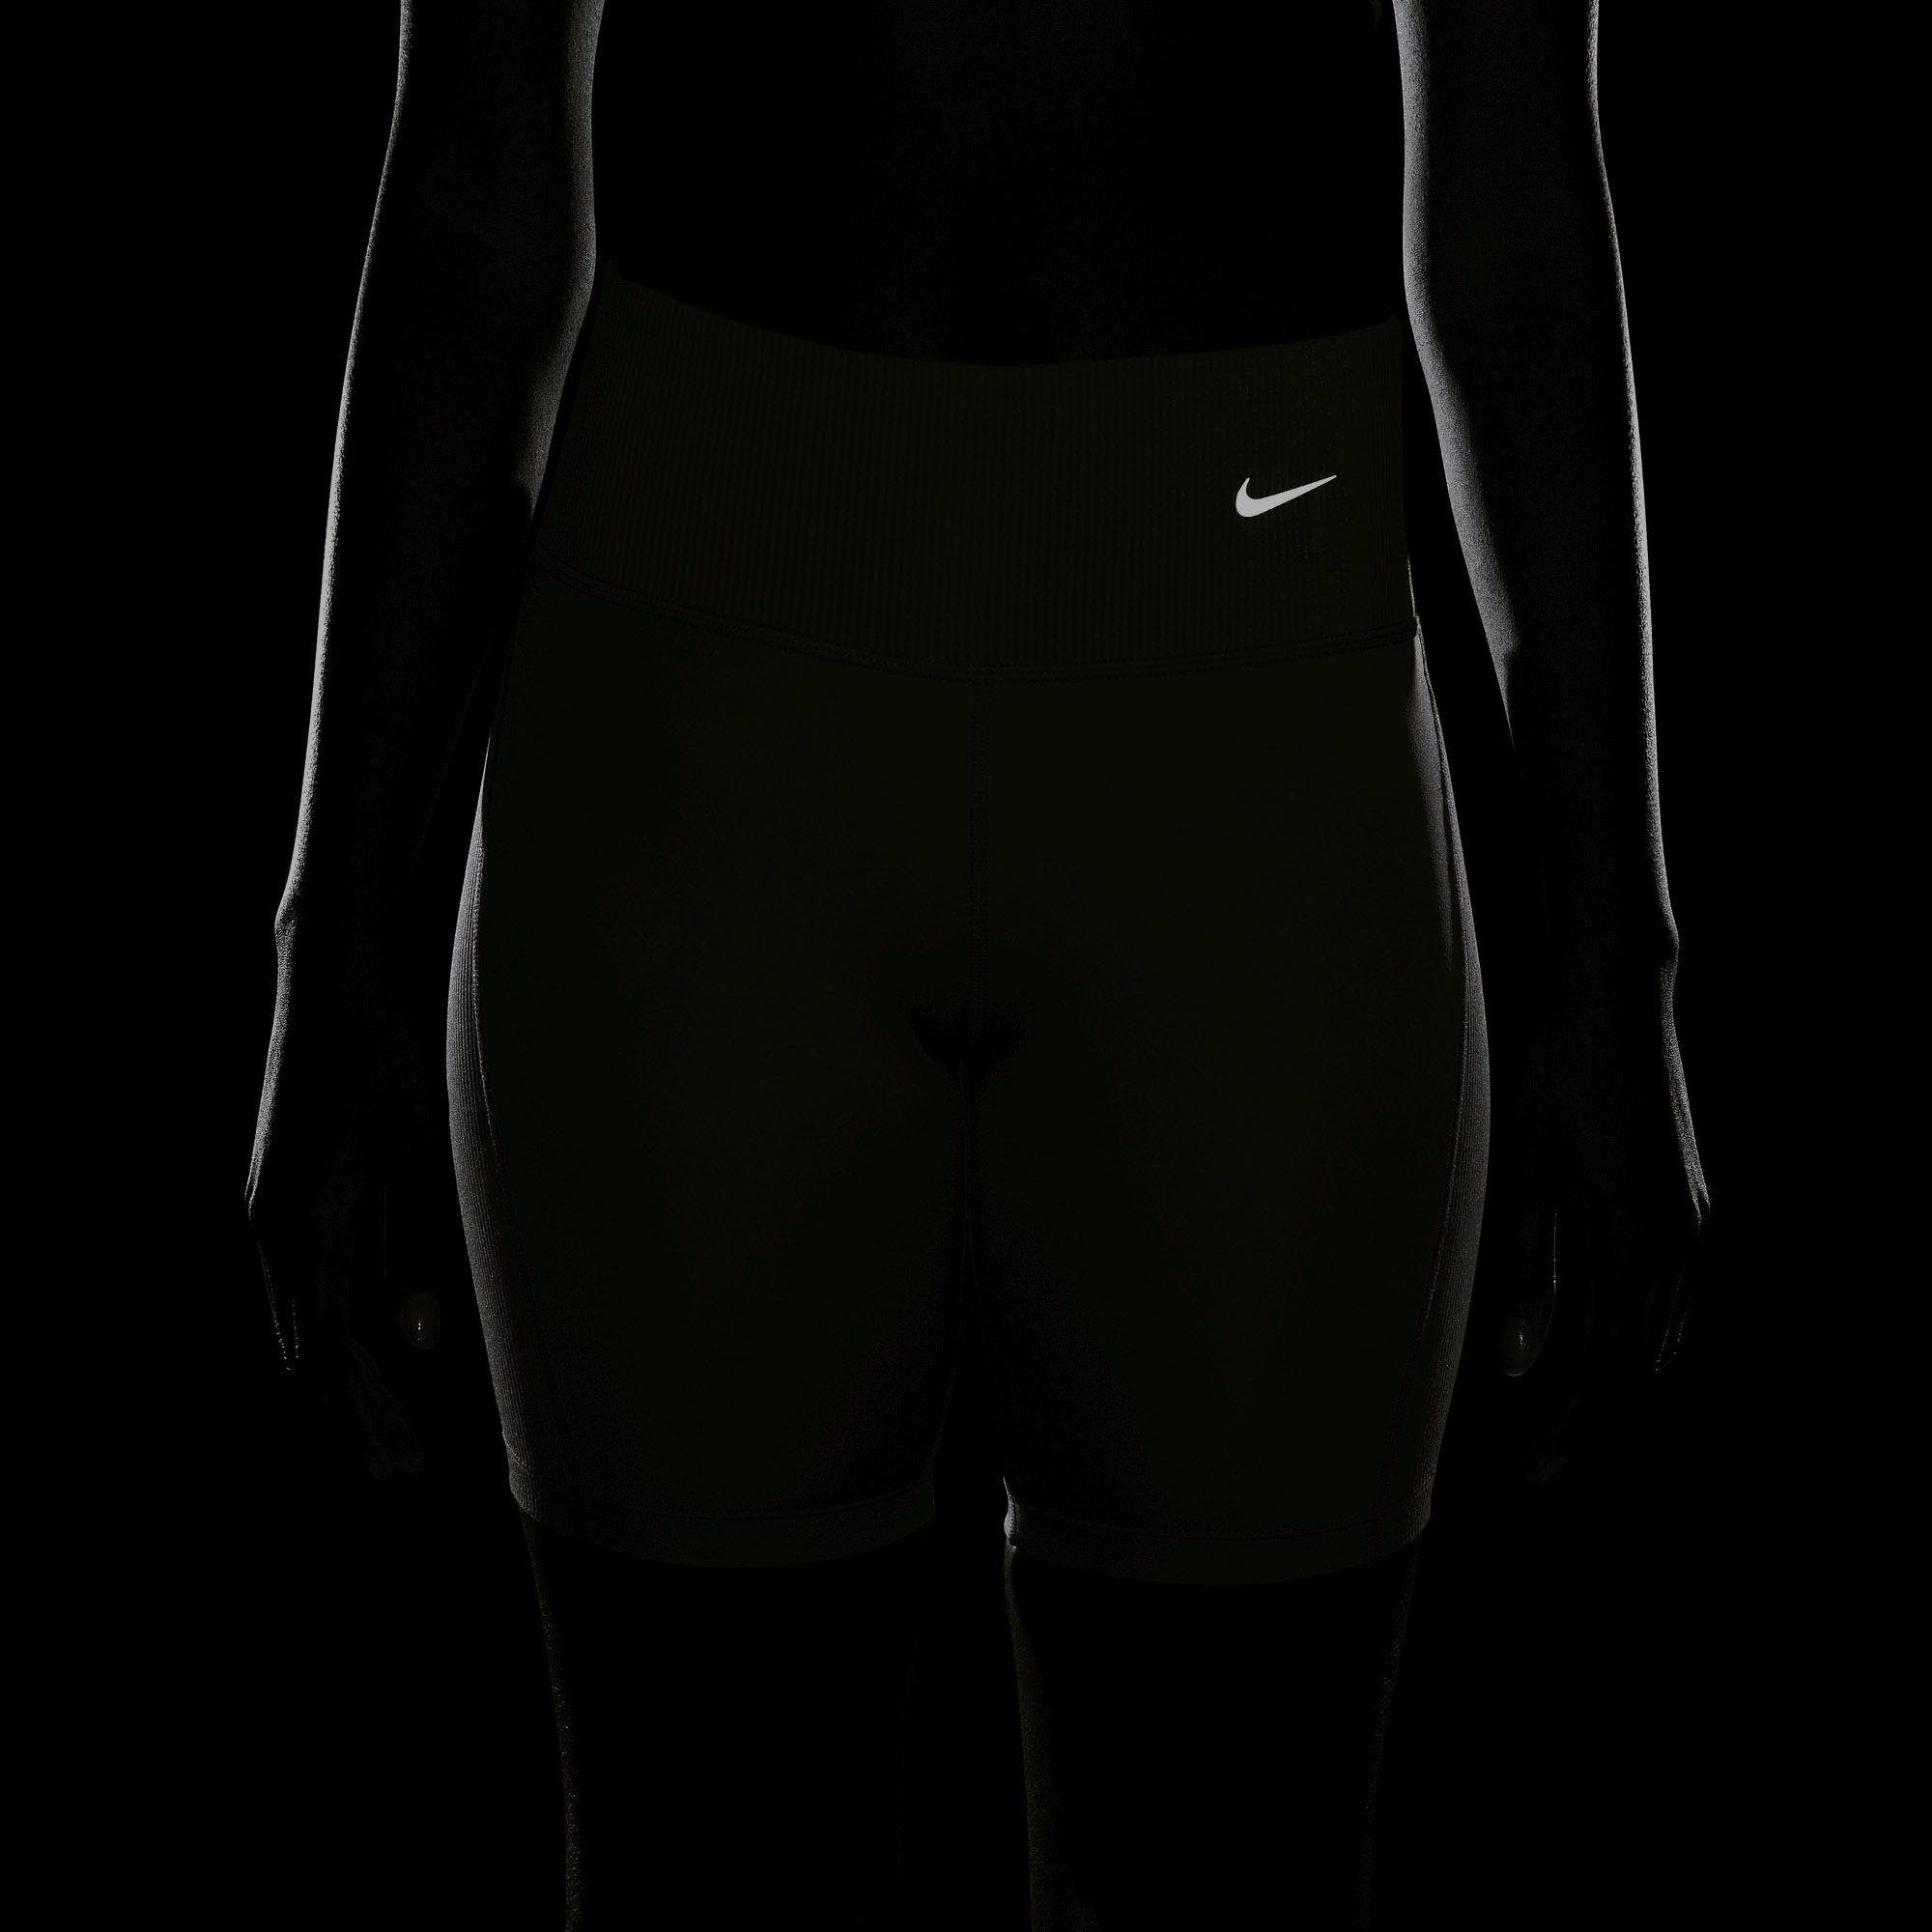 Women's Shorts Lauftights Dri-FIT Nike grün